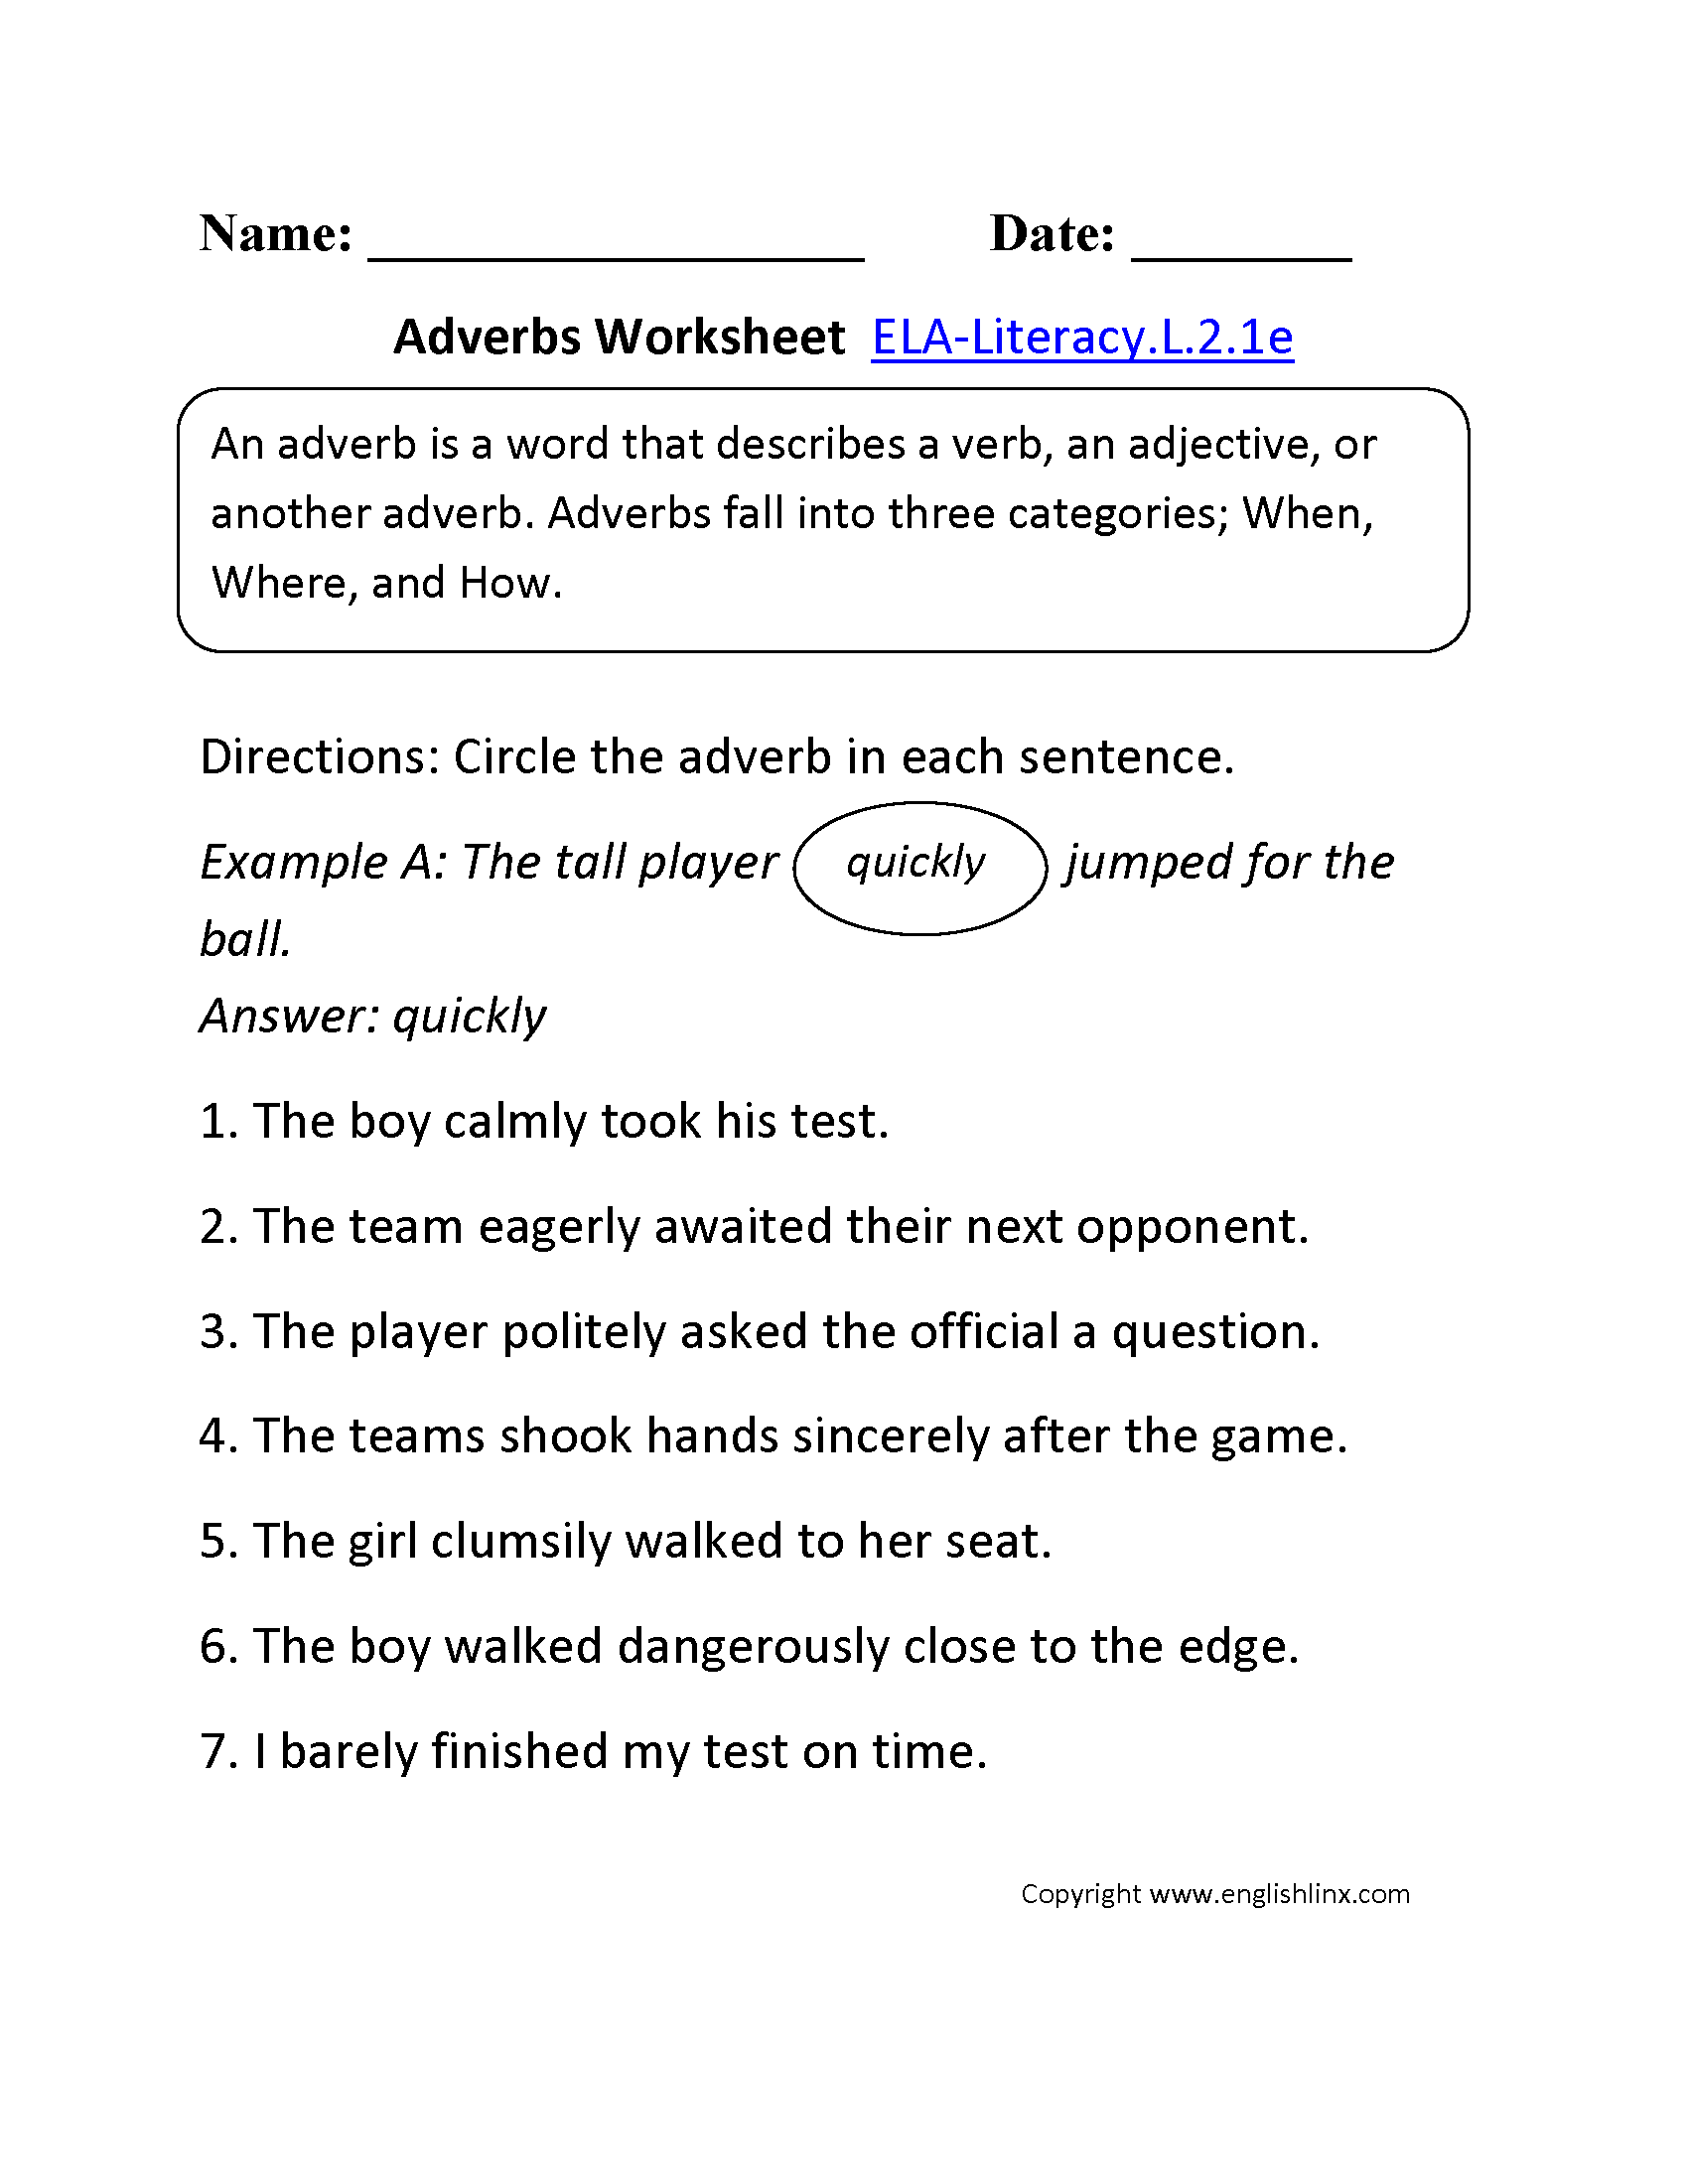 Adverbs Worksheet 1 ELA-Literacy.L.2.1e Language Worksheet